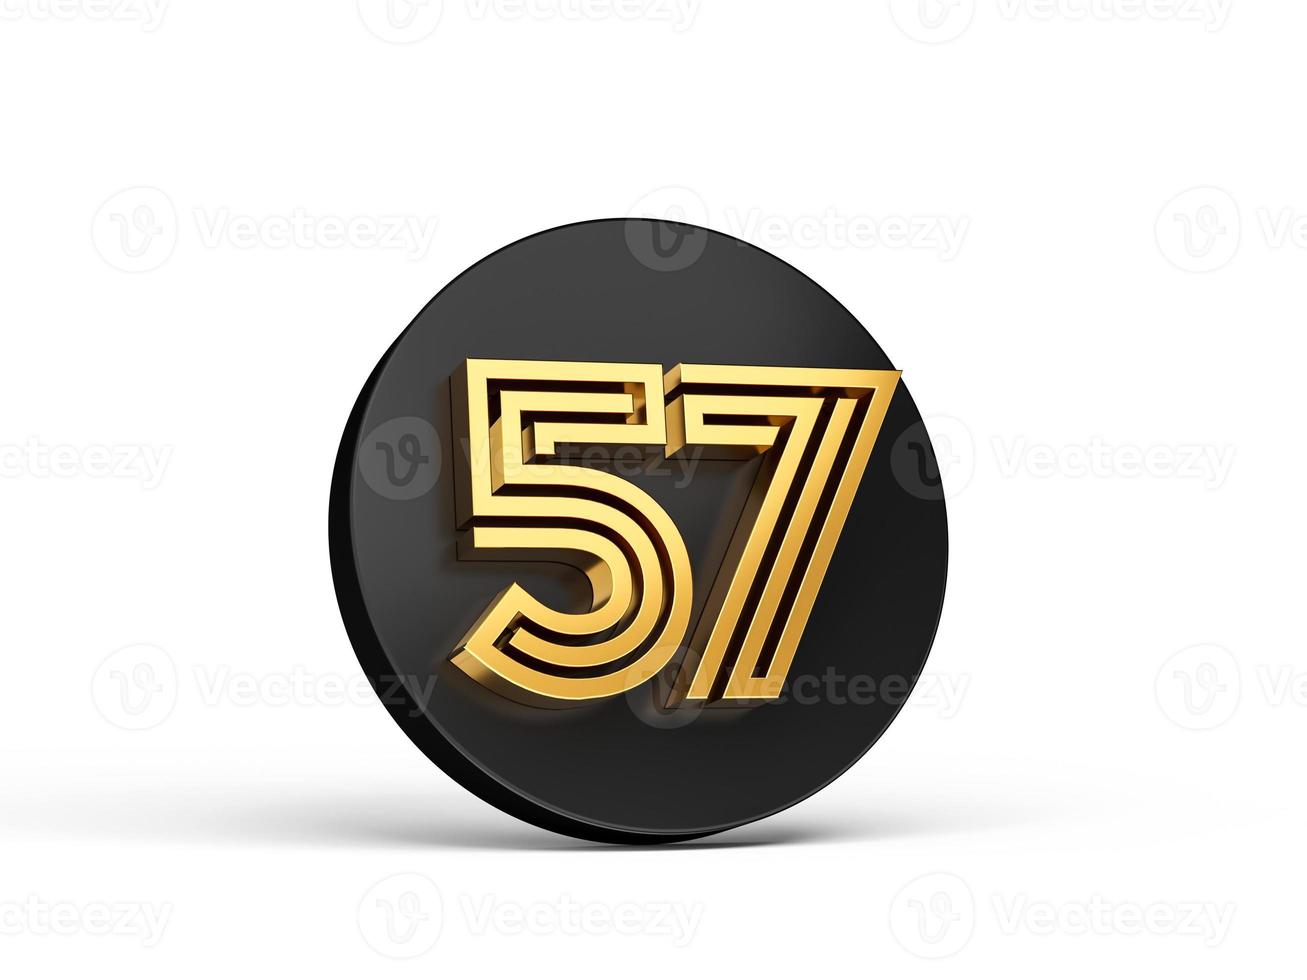 fonte moderna de ouro real. letra de dígito 3d elite 57 cinquenta e sete no ícone de botão 3d preto ilustração 3d foto